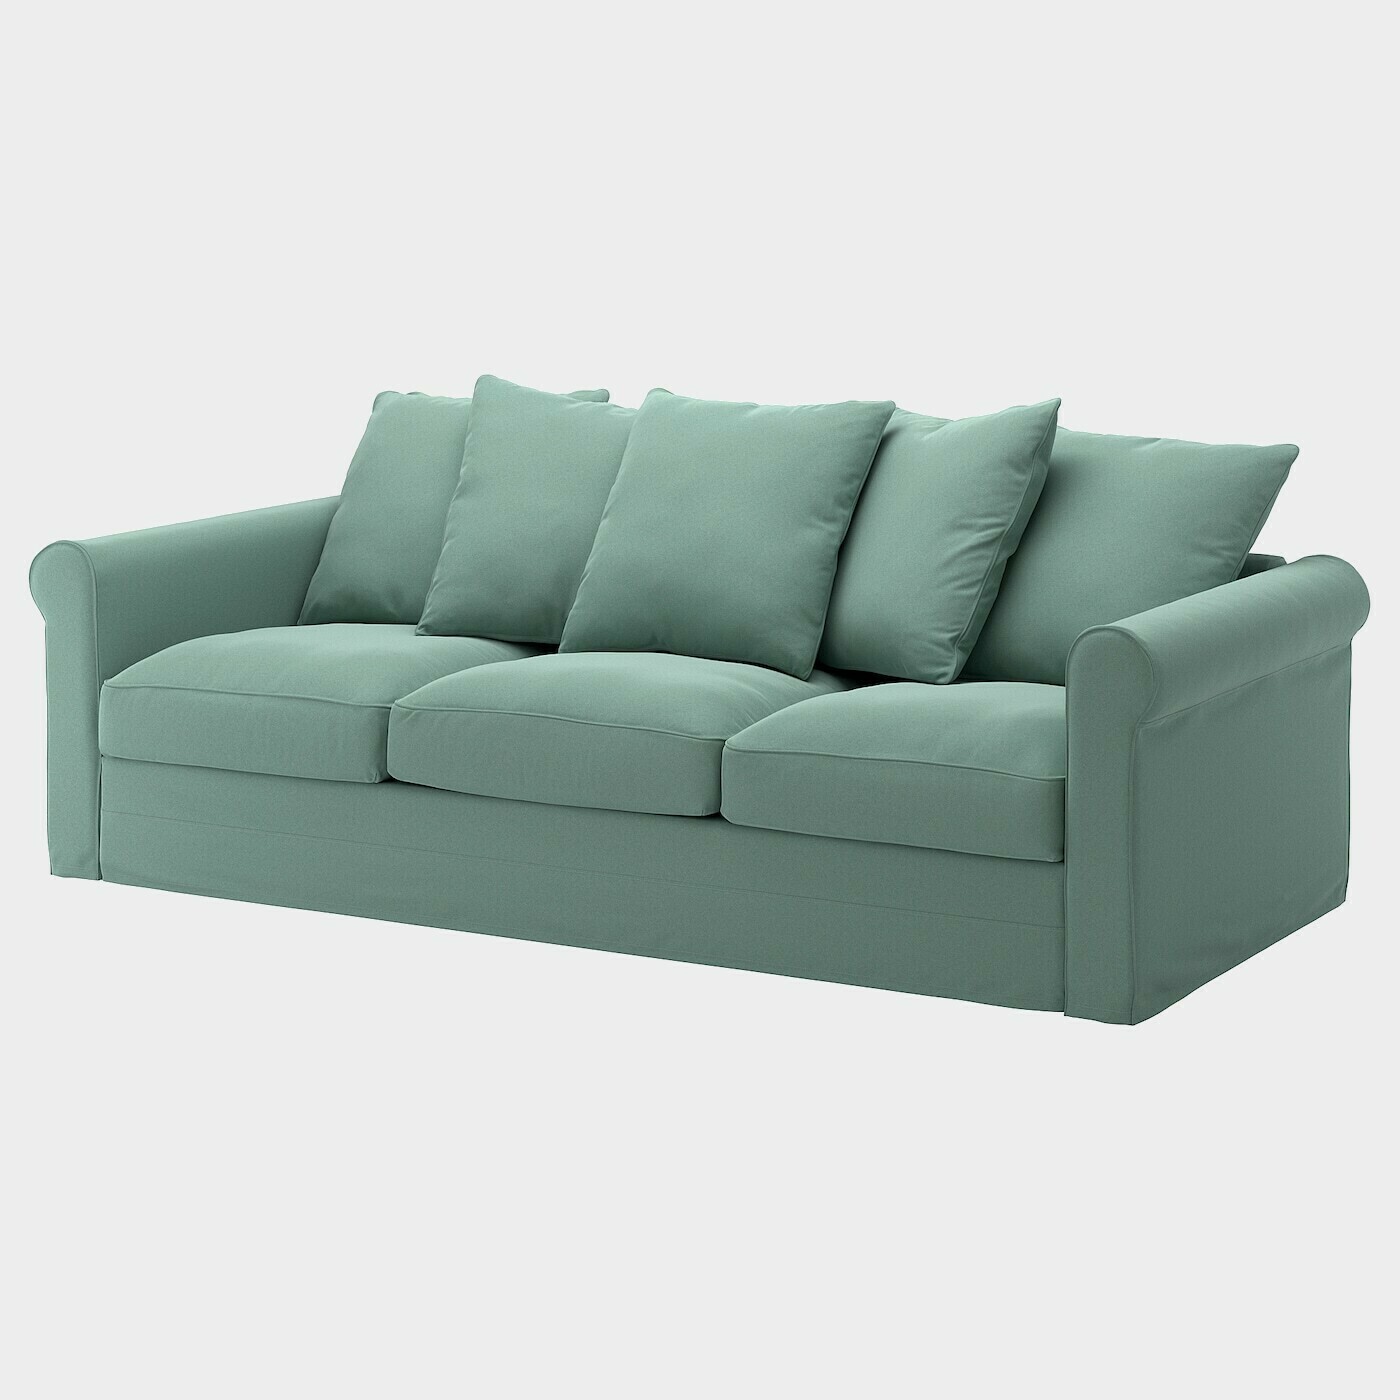 GRÖNLID 3er-Sofa  -  - Möbel Ideen für dein Zuhause von Home Trends. Möbel Trends von Social Media Influencer für dein Skandi Zuhause.